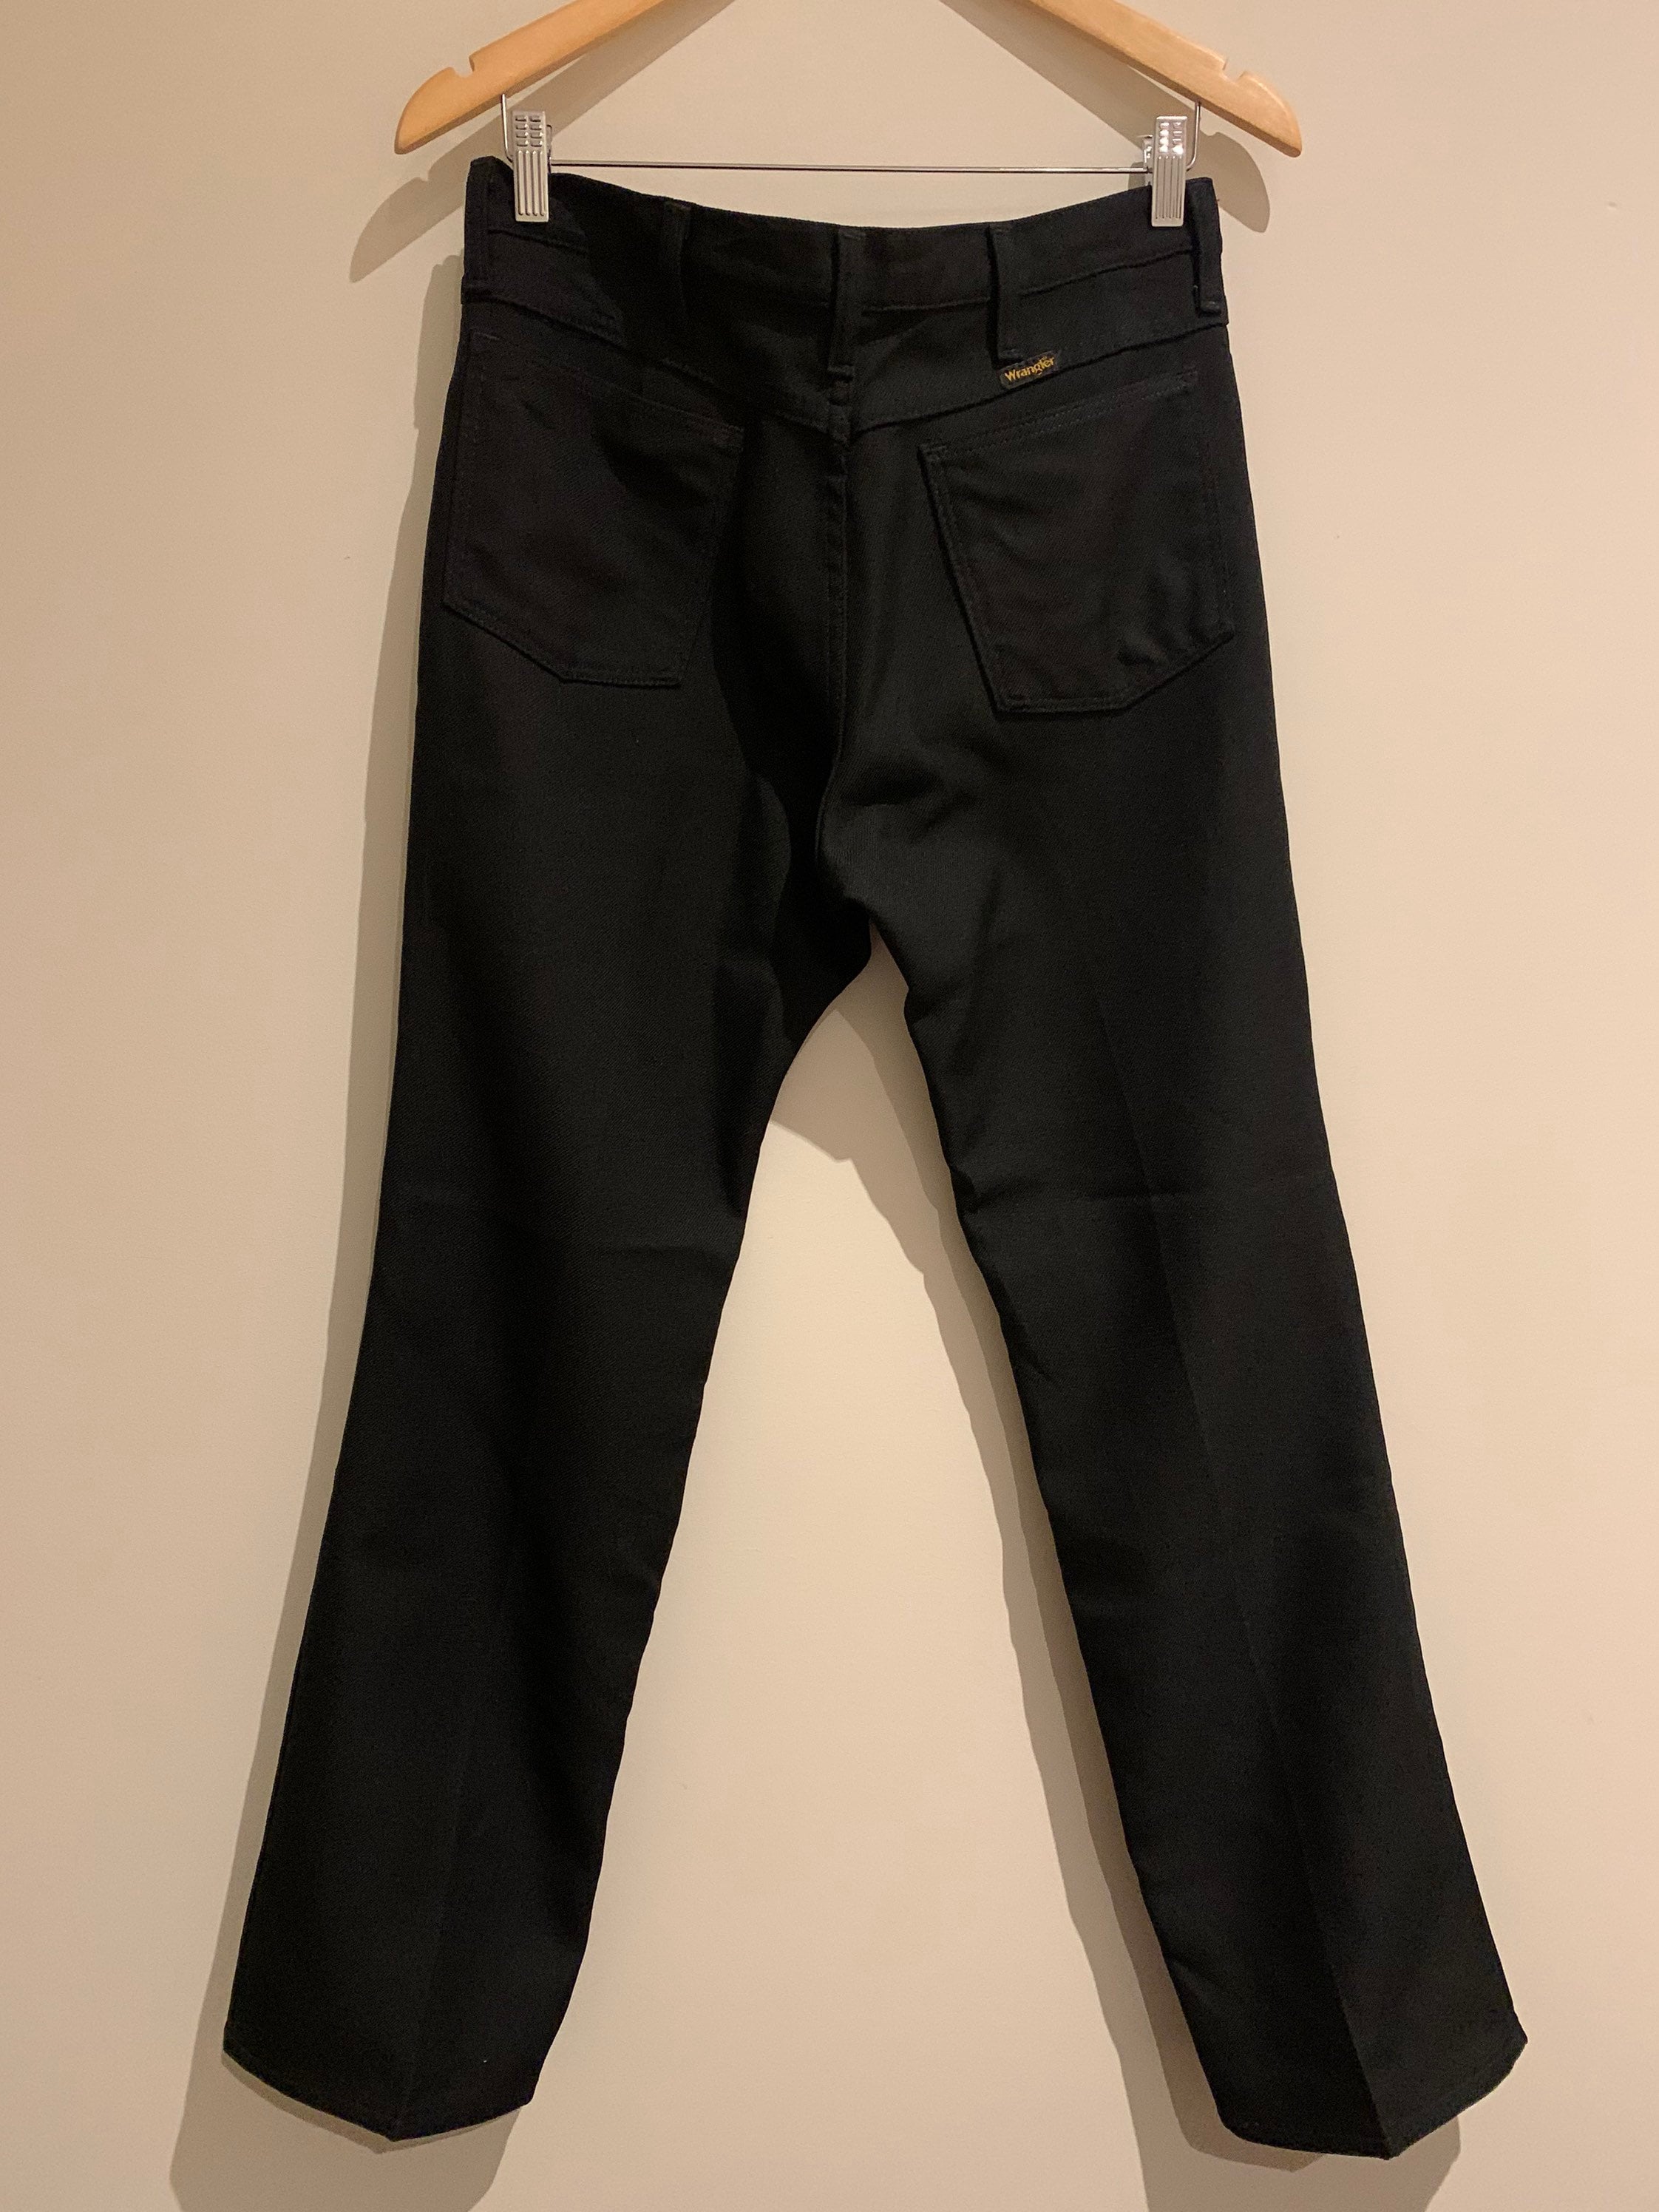 70s Black Wrangler Polyester Pants | Etsy